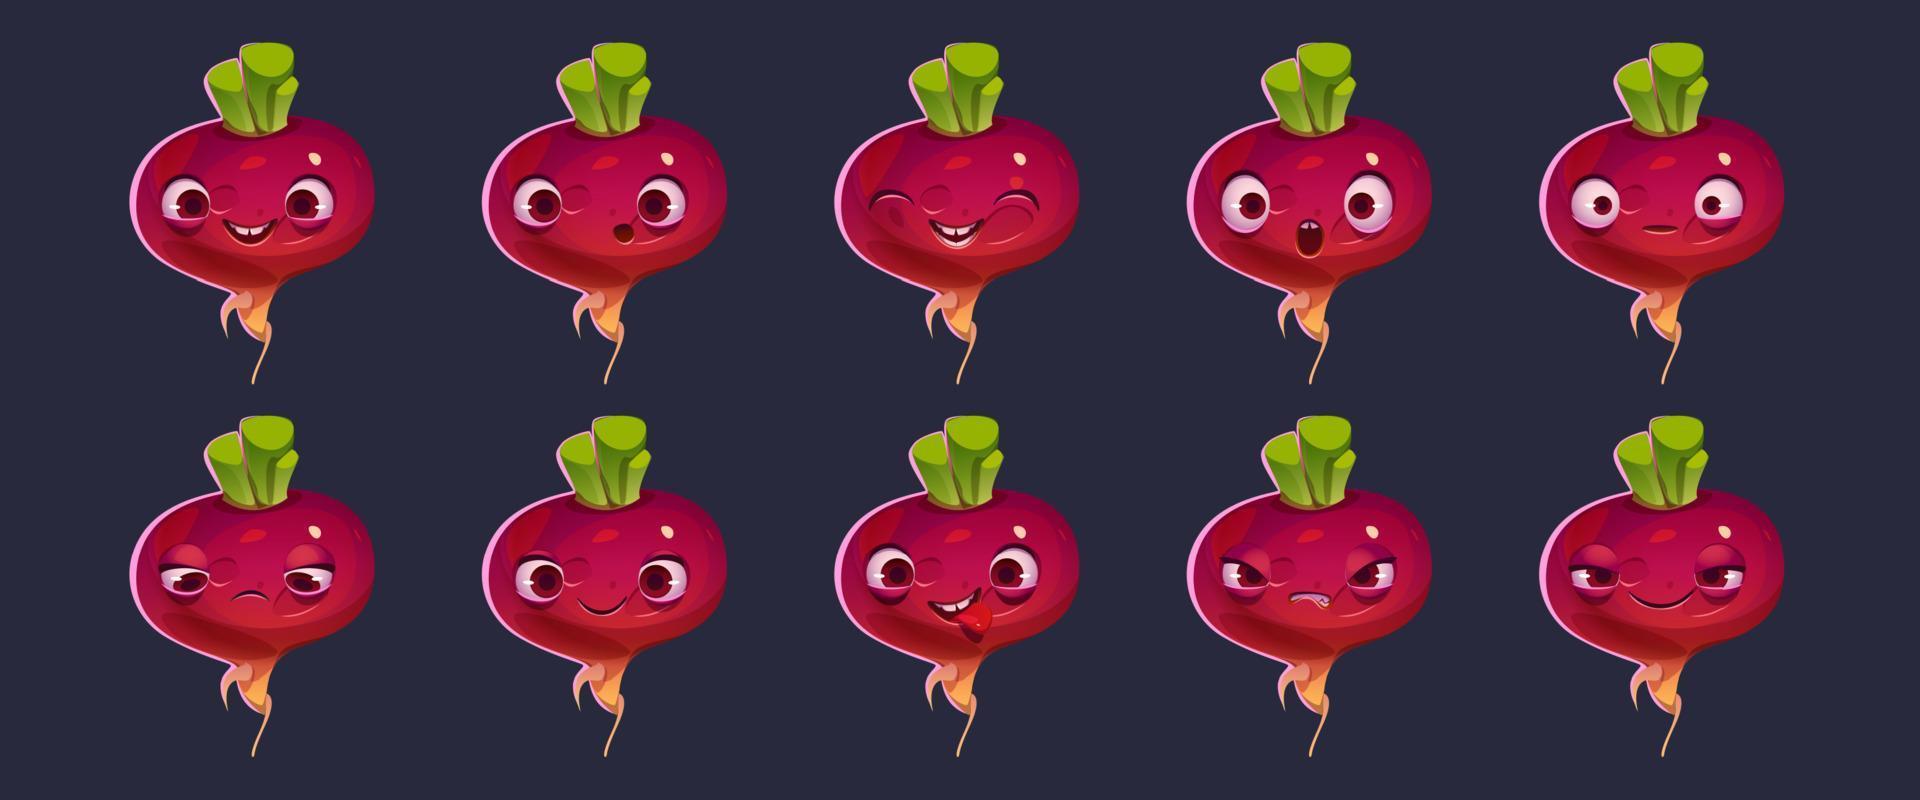 niedliches rote-beete- oder rüben-charakter-gesicht-emoji-set vektor